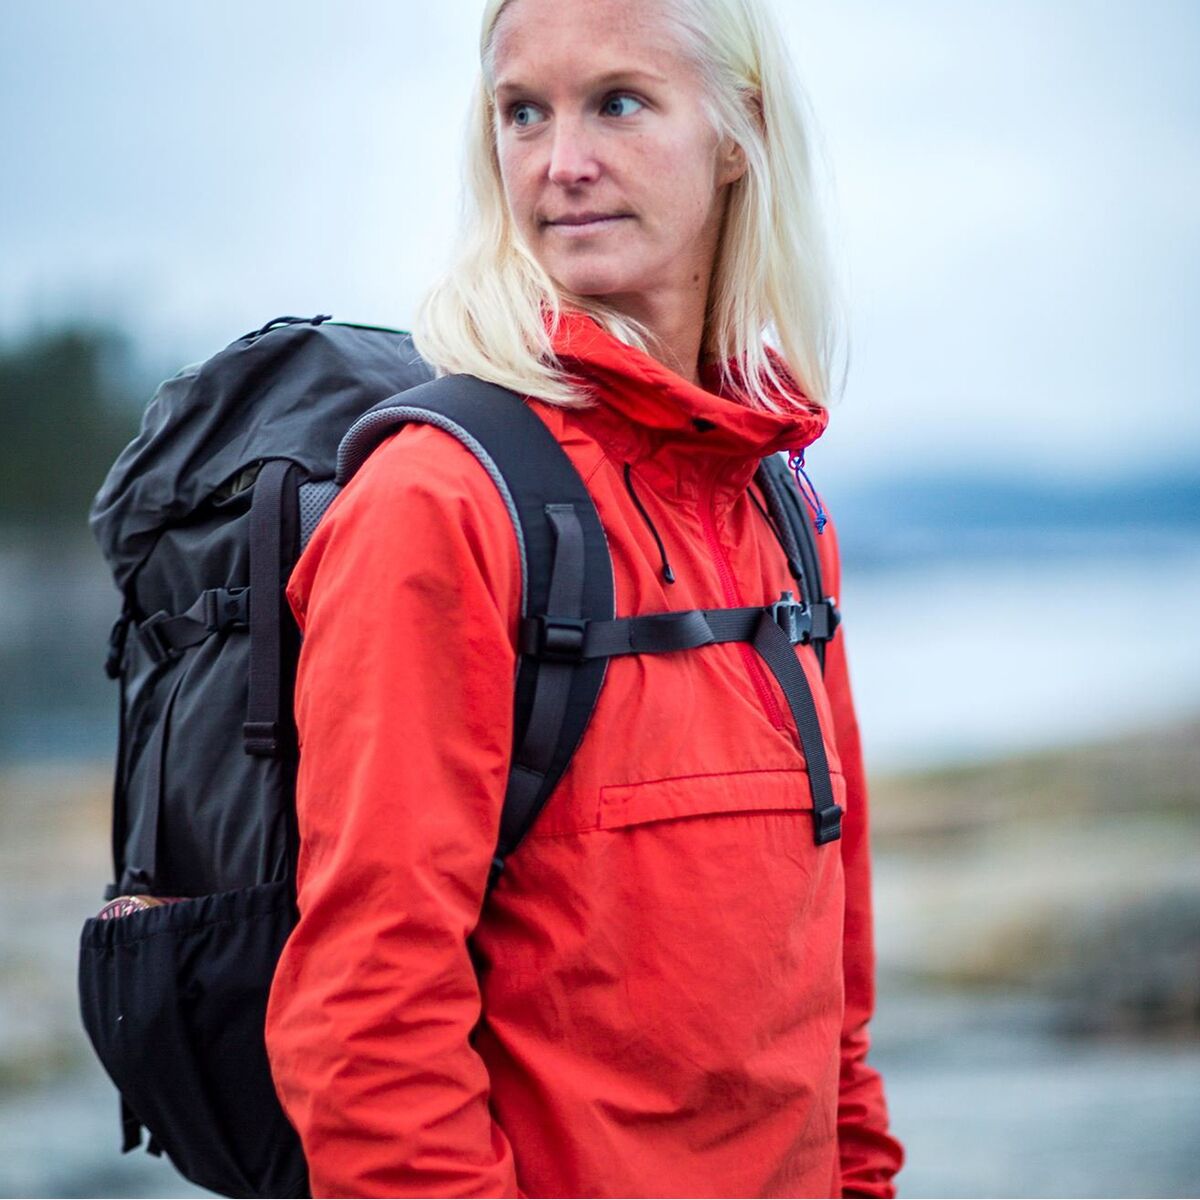 Surrey behang Schuldenaar Fjallraven Kaipak 38L Backpack - Women's - Hike & Camp